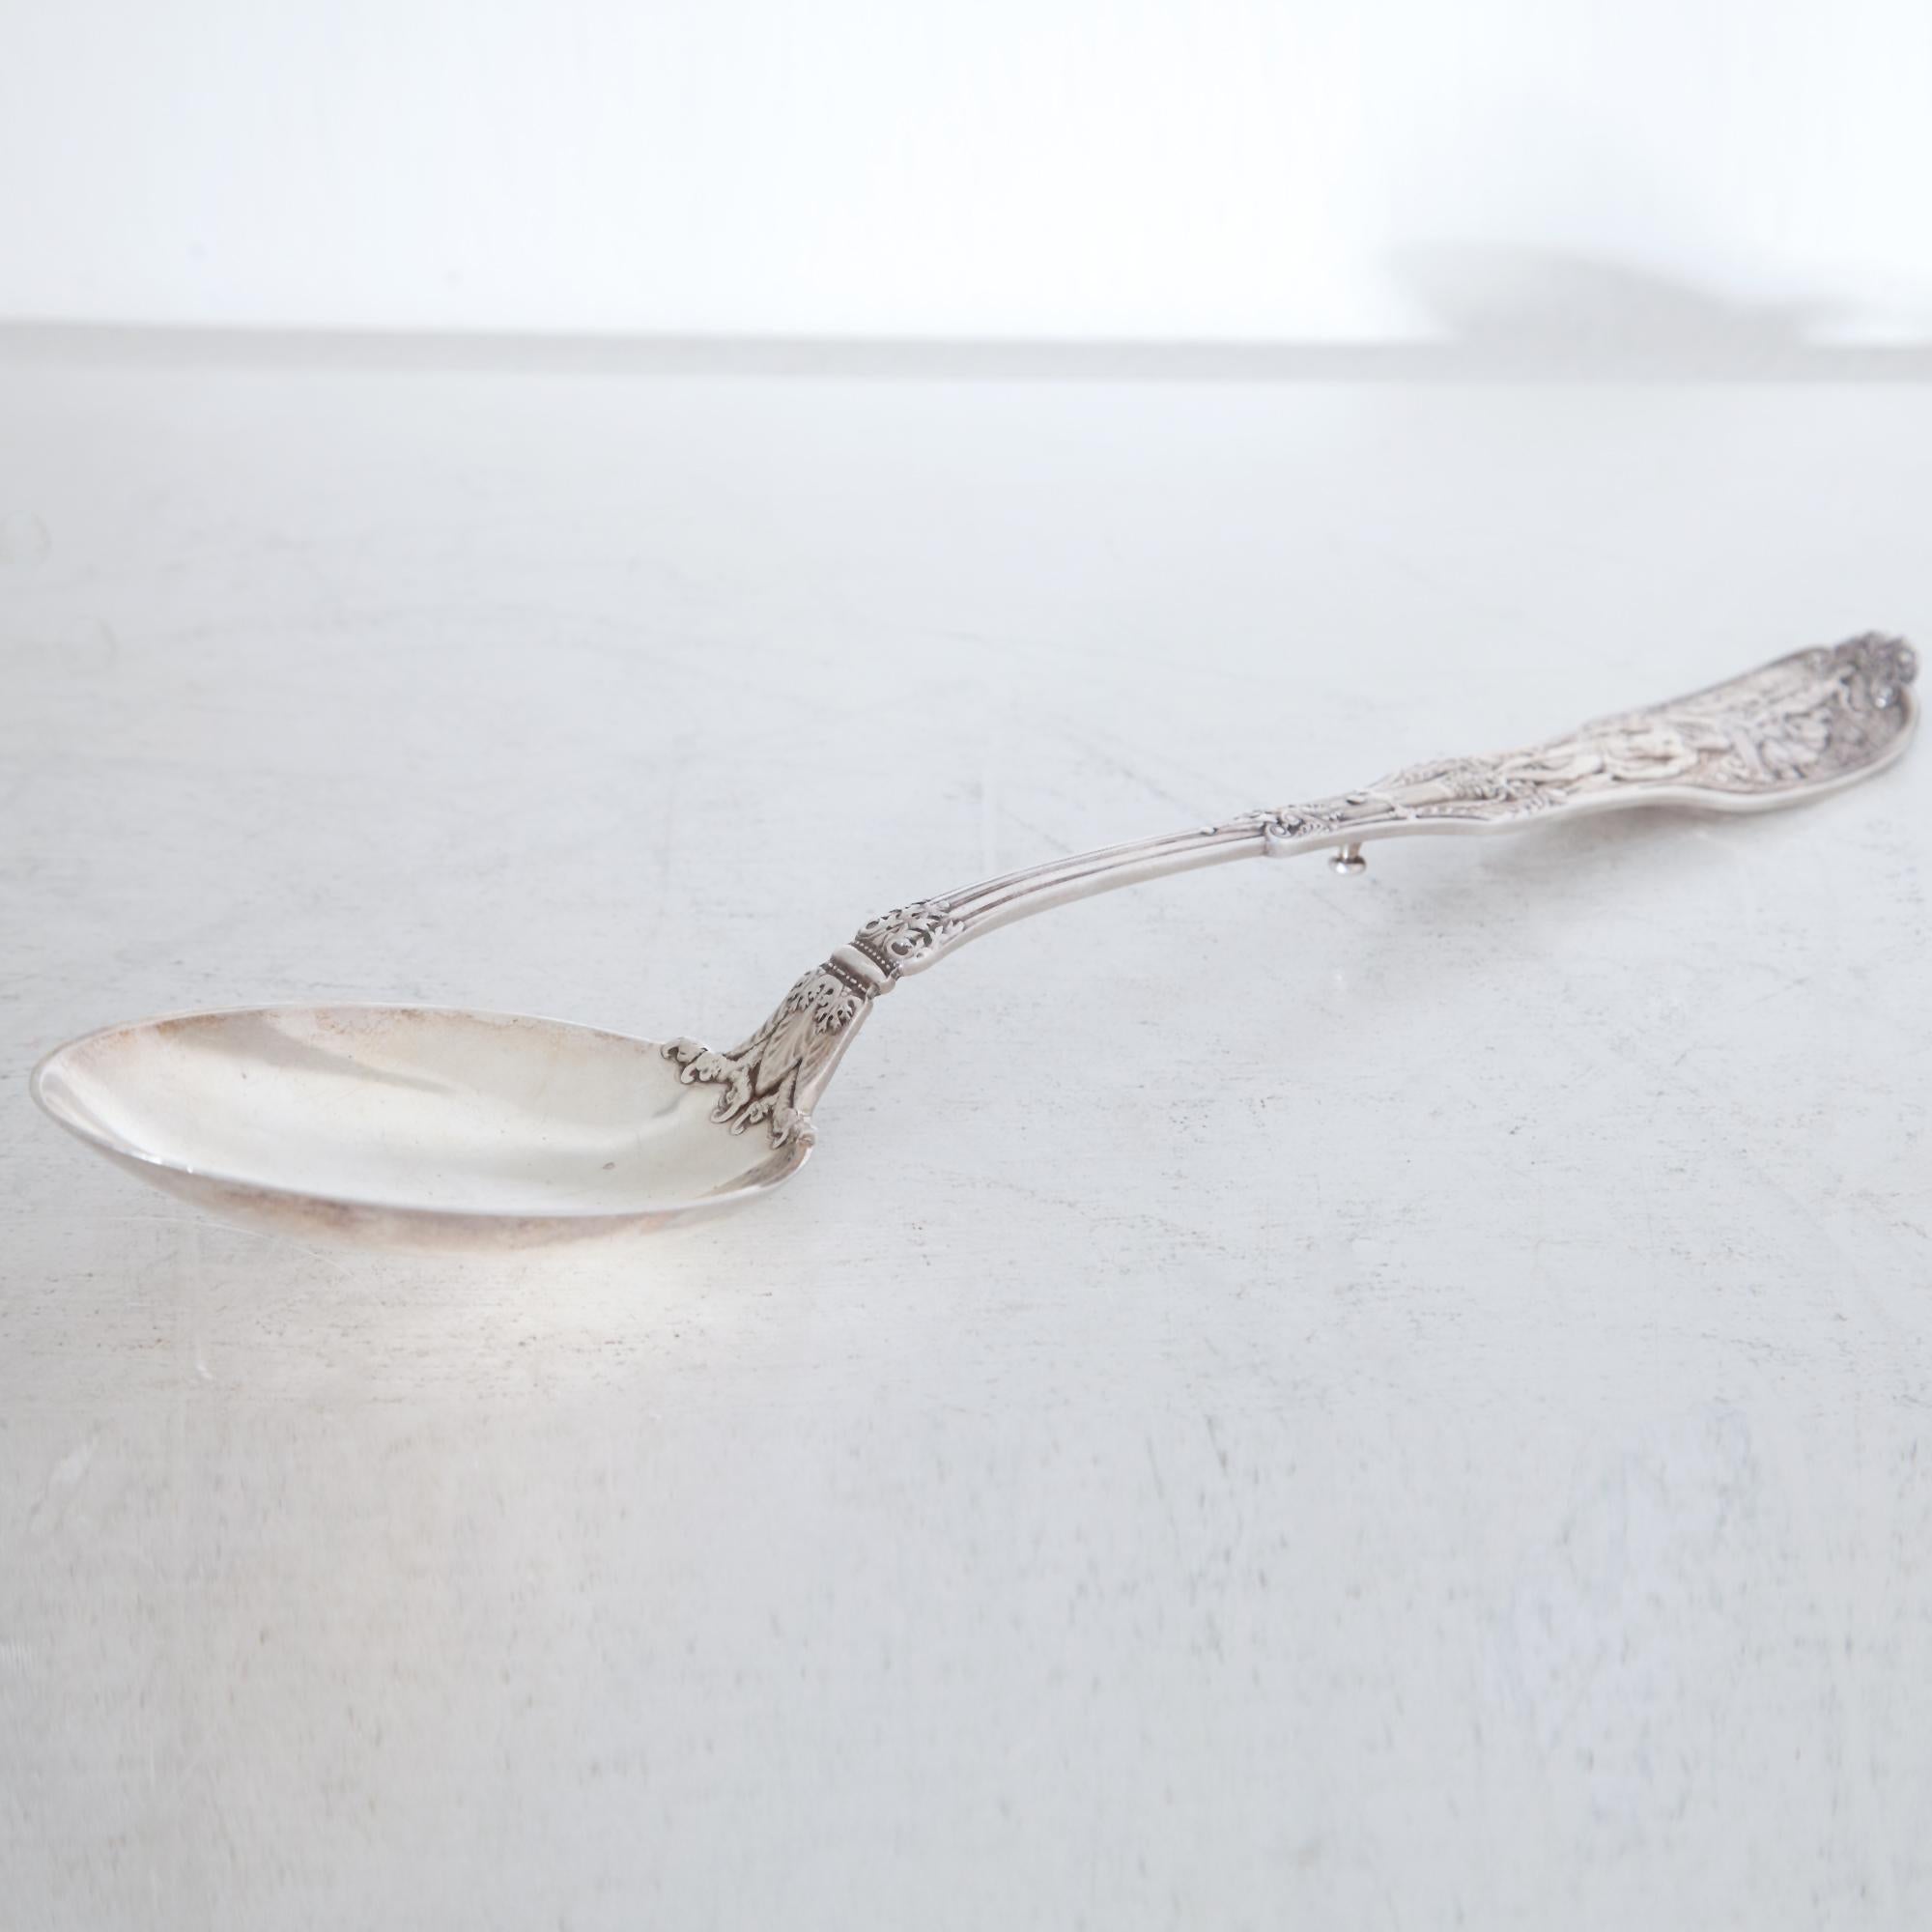 American Large Spoon, Spaulding & Co., Chicago Pat, 1895